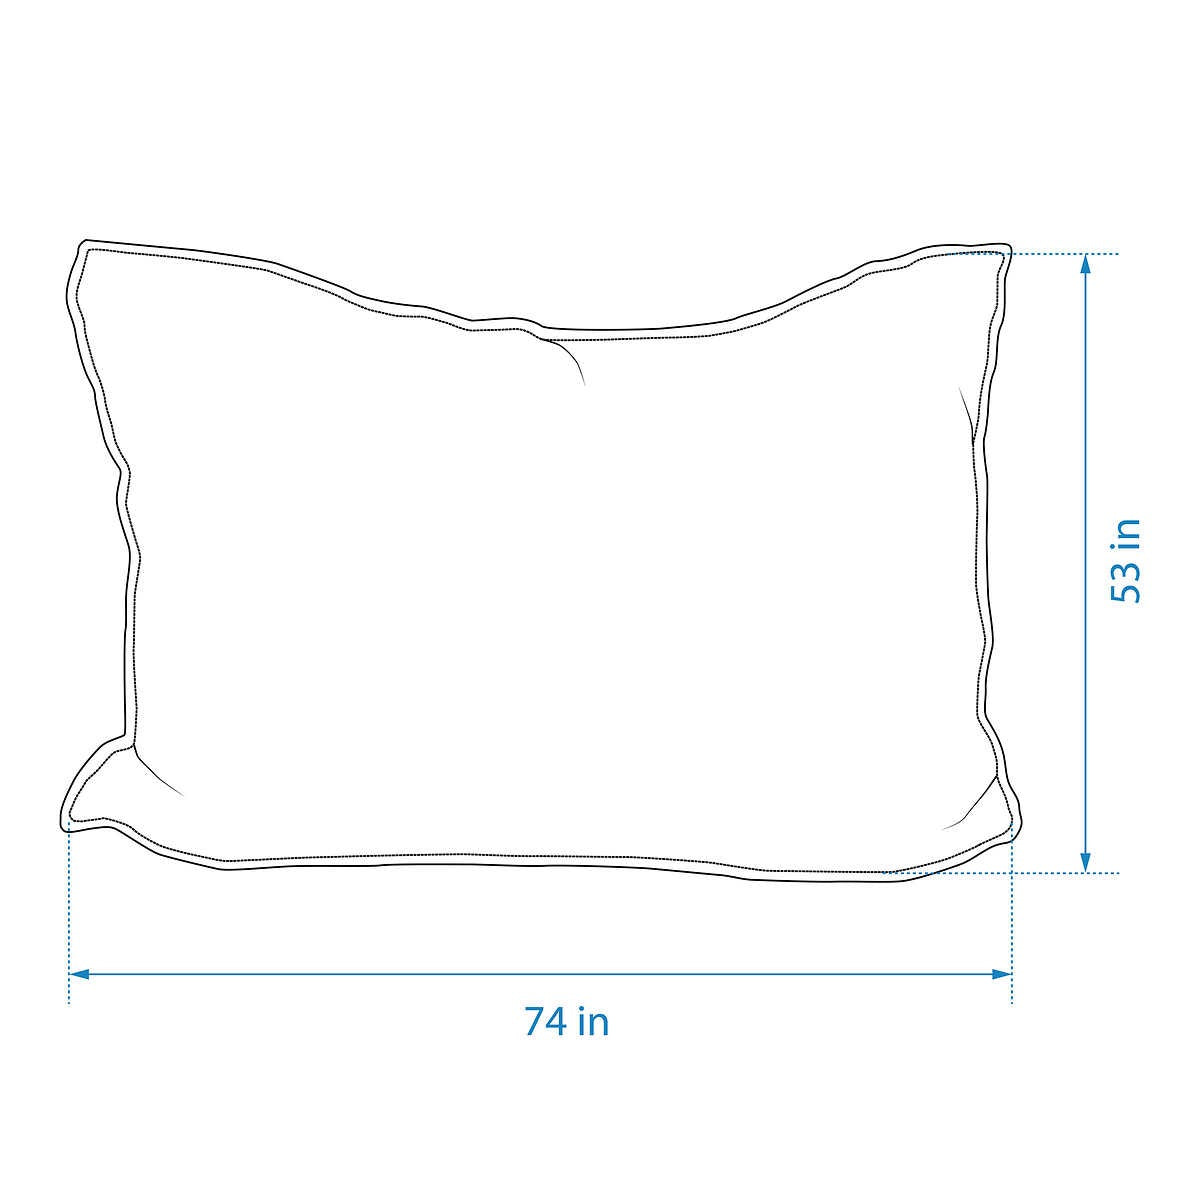 Crash Pillow Bundle